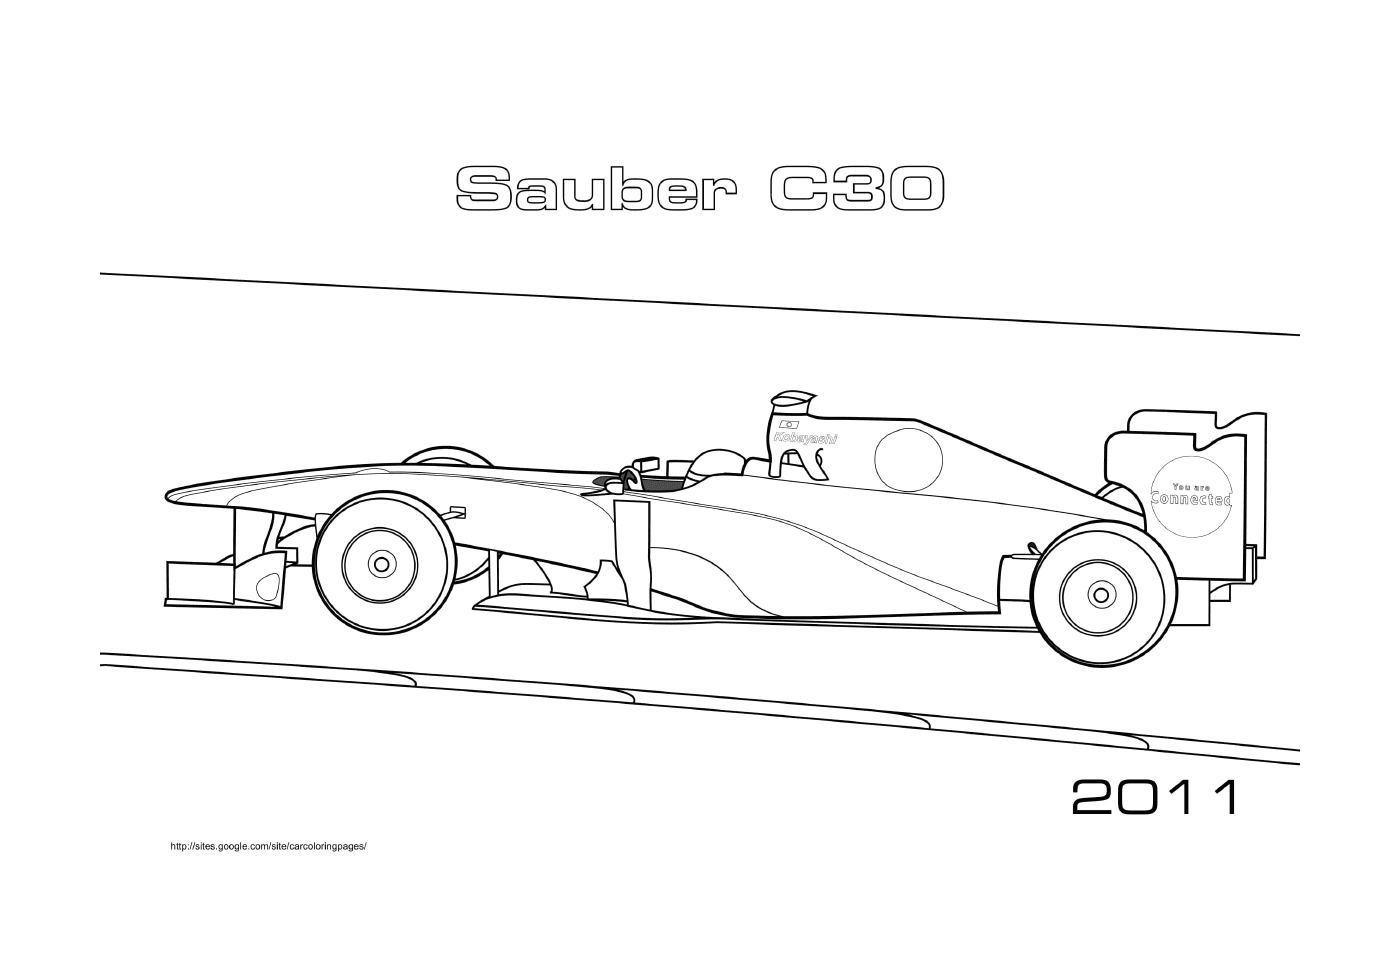   Sauber C30 F1 2011 